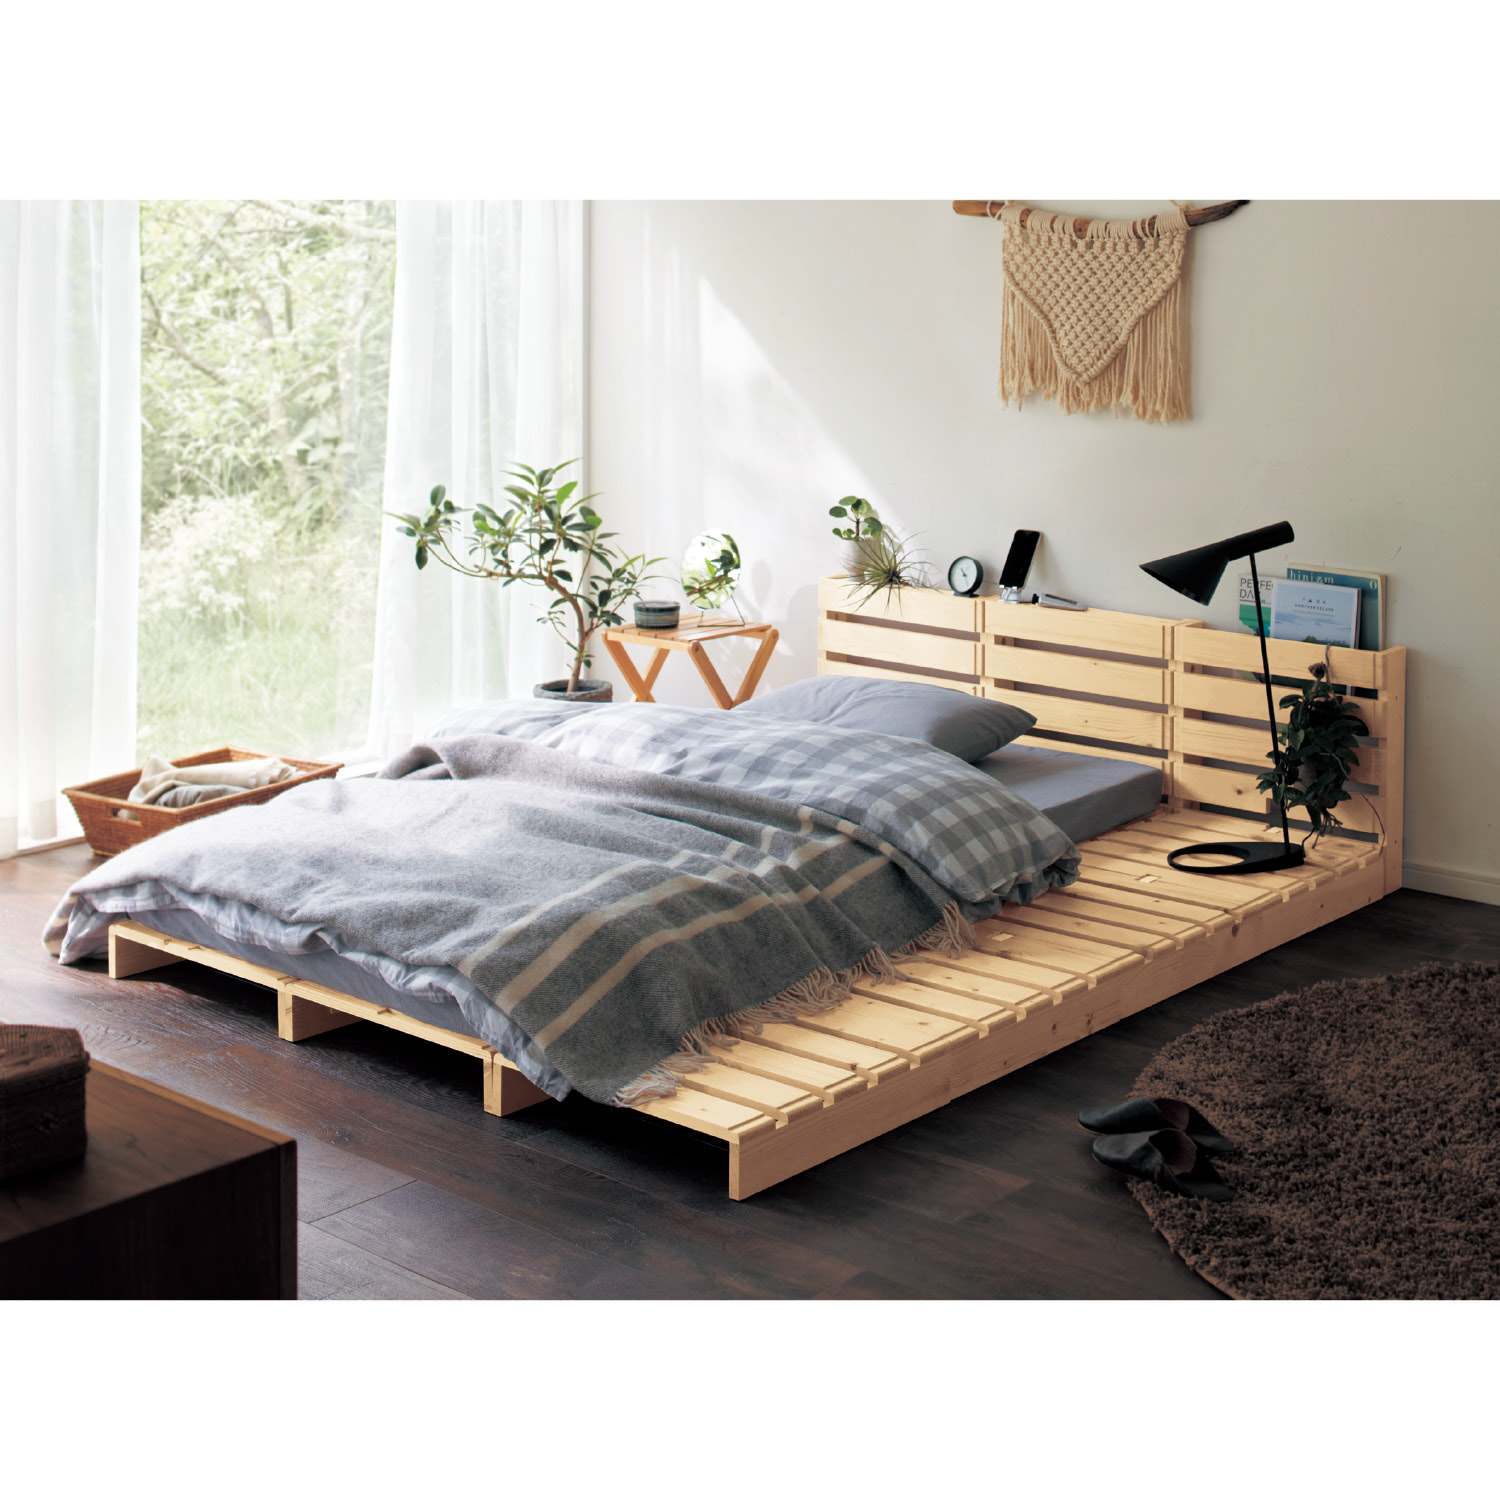 パレットベッド 12枚 ベッド パレット すのこ すのこベッド ベッドフレーム 簡単組み立て 通気性 おしゃれ 木製 天然木 ベルメゾン 家具